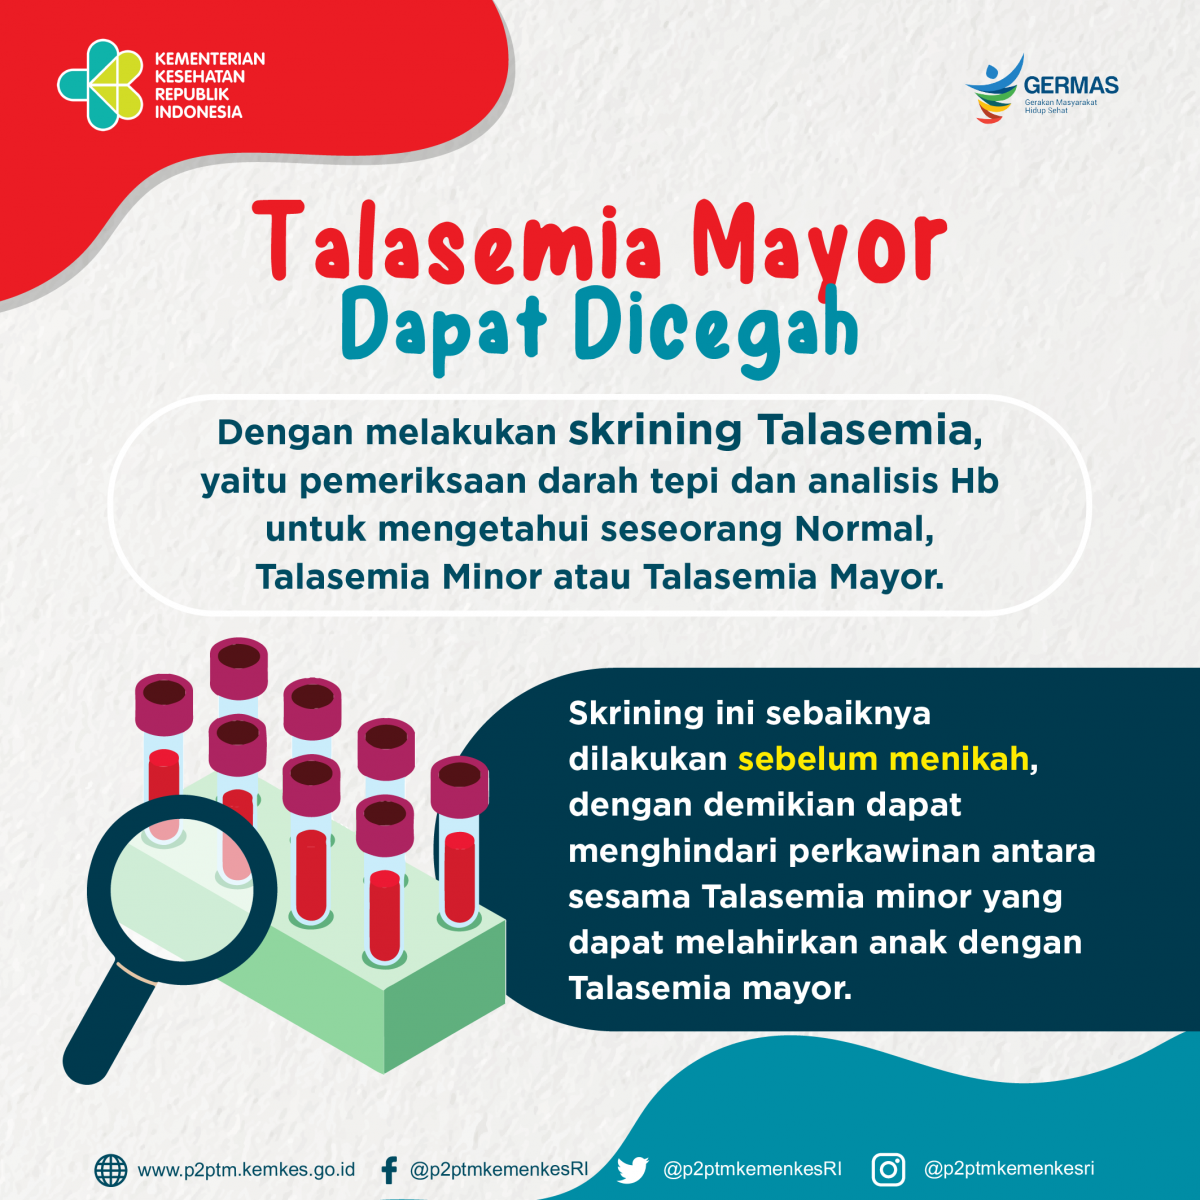 Talasemia Mayor dapat dicegah dengan melakukan skrining Talasemia.